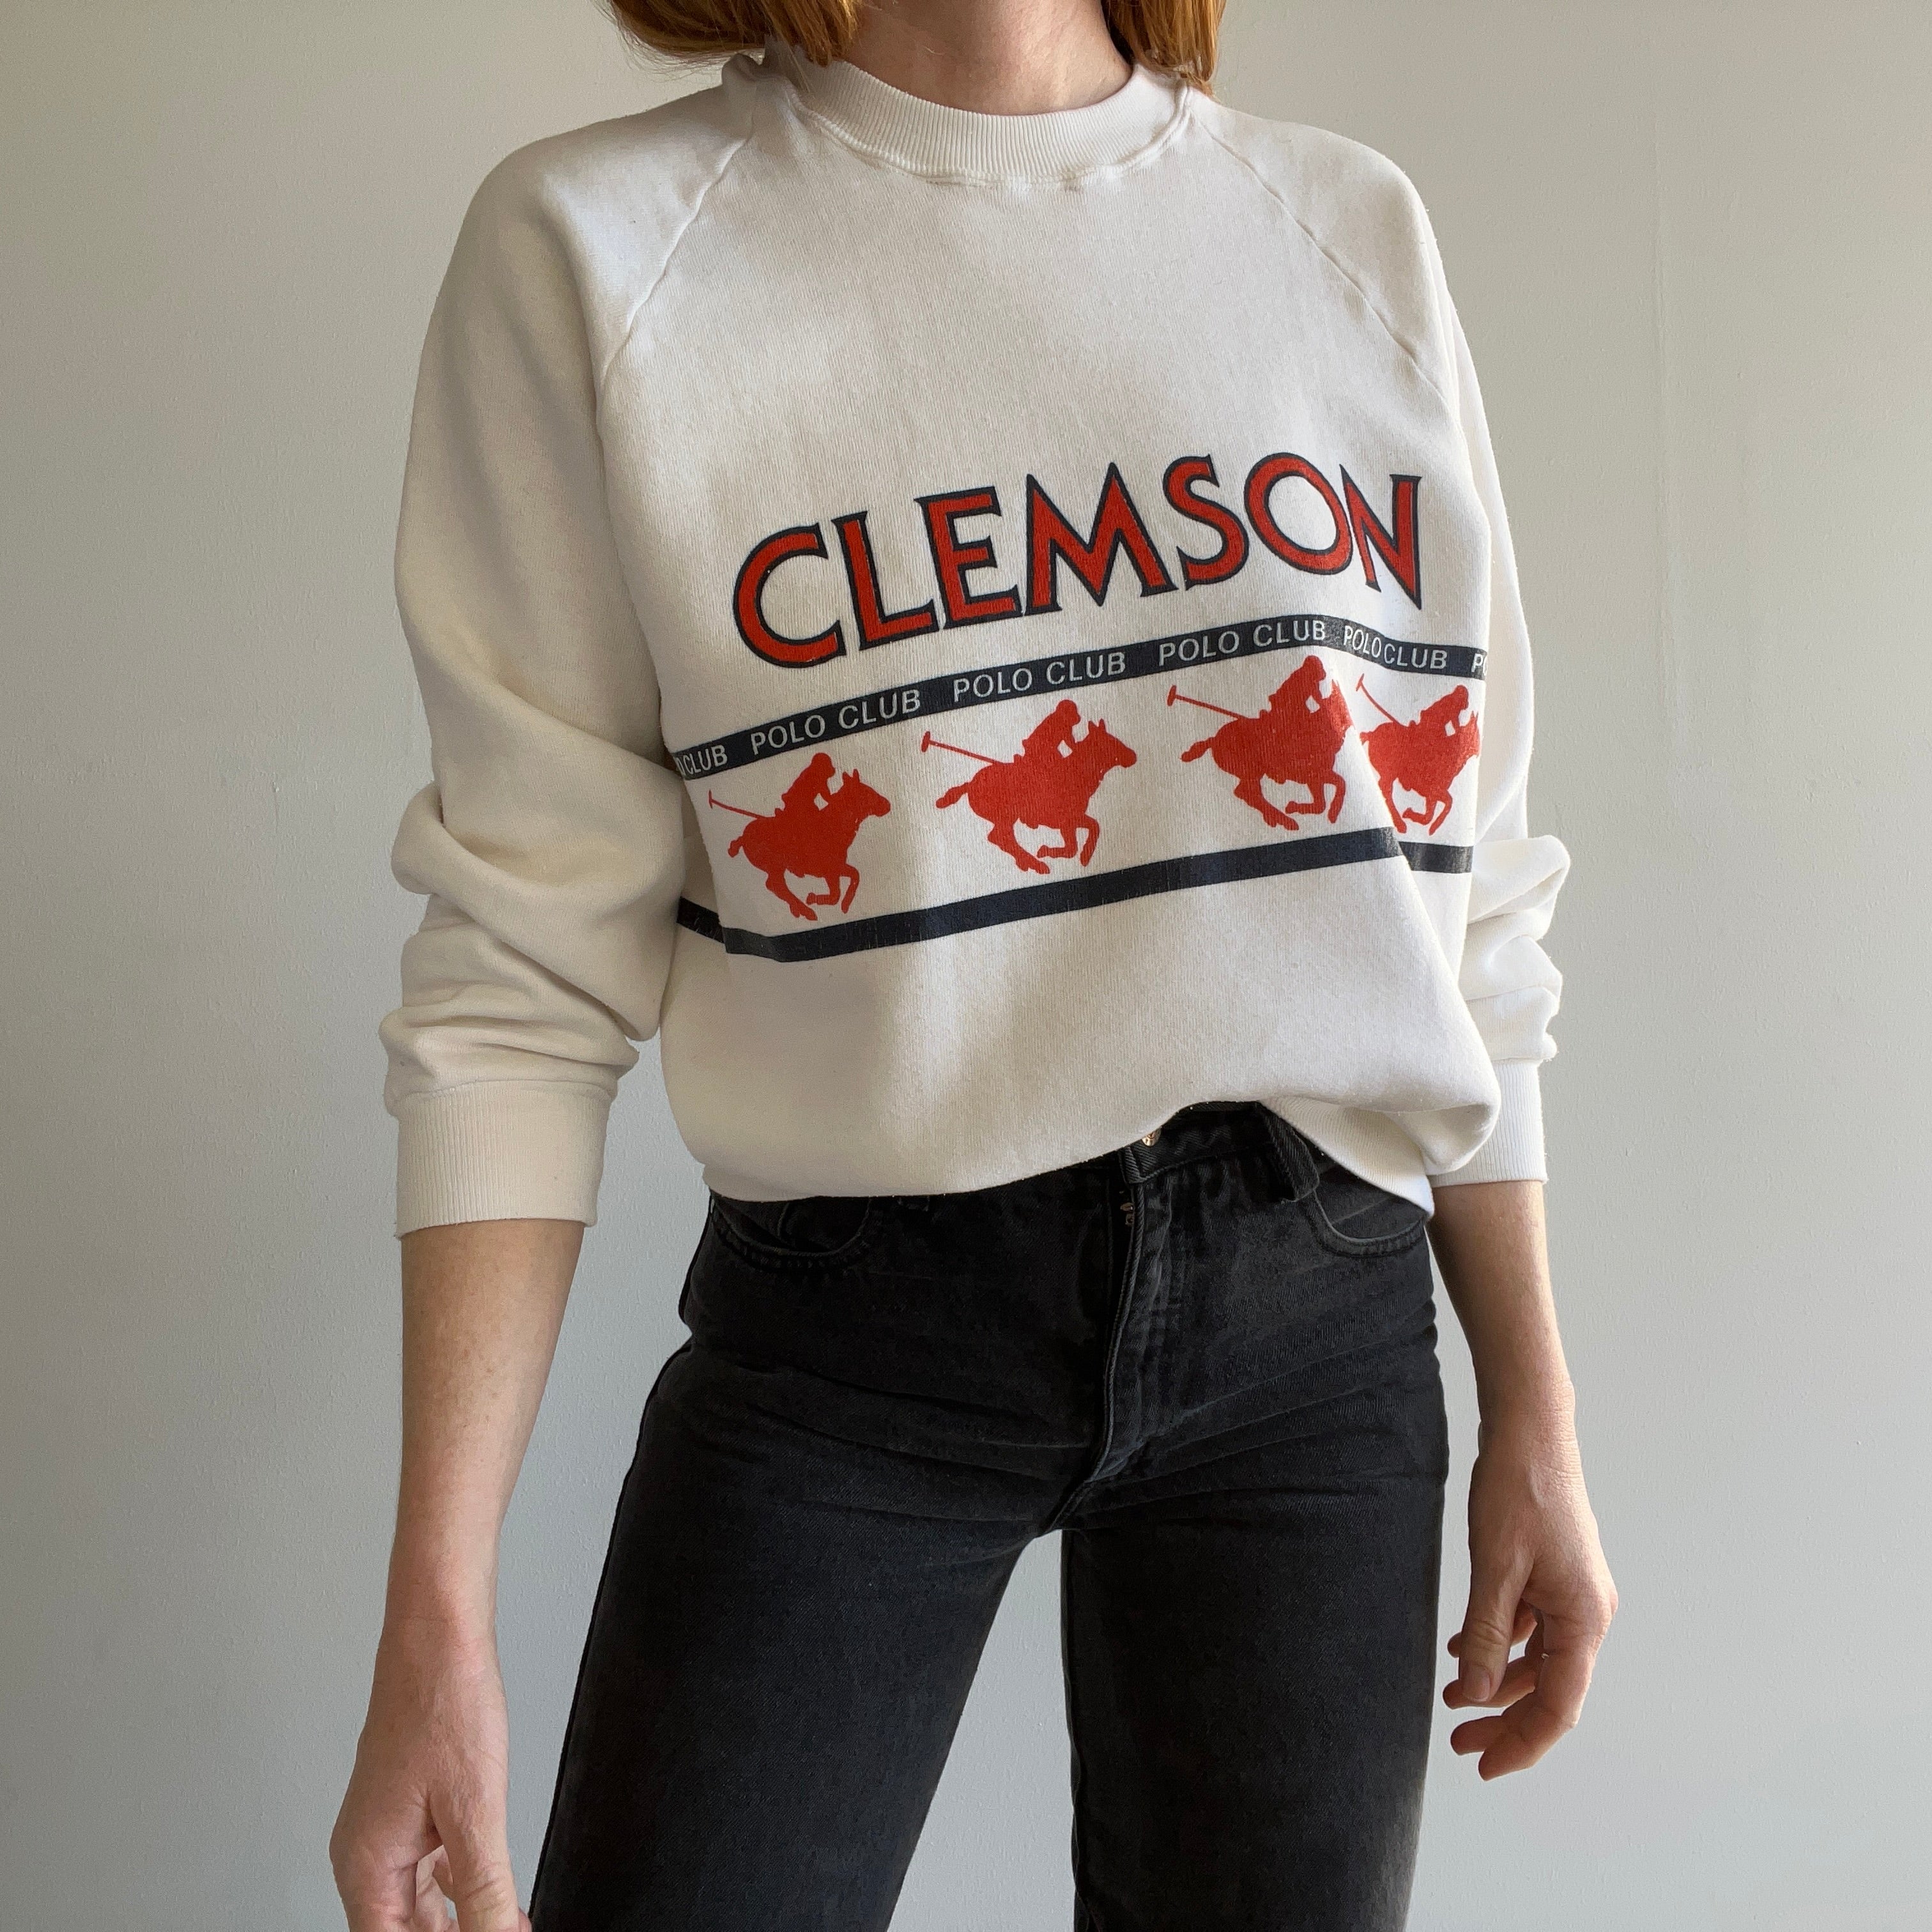 1980s Clemson Polo Club Sweatshirt by Jerzees